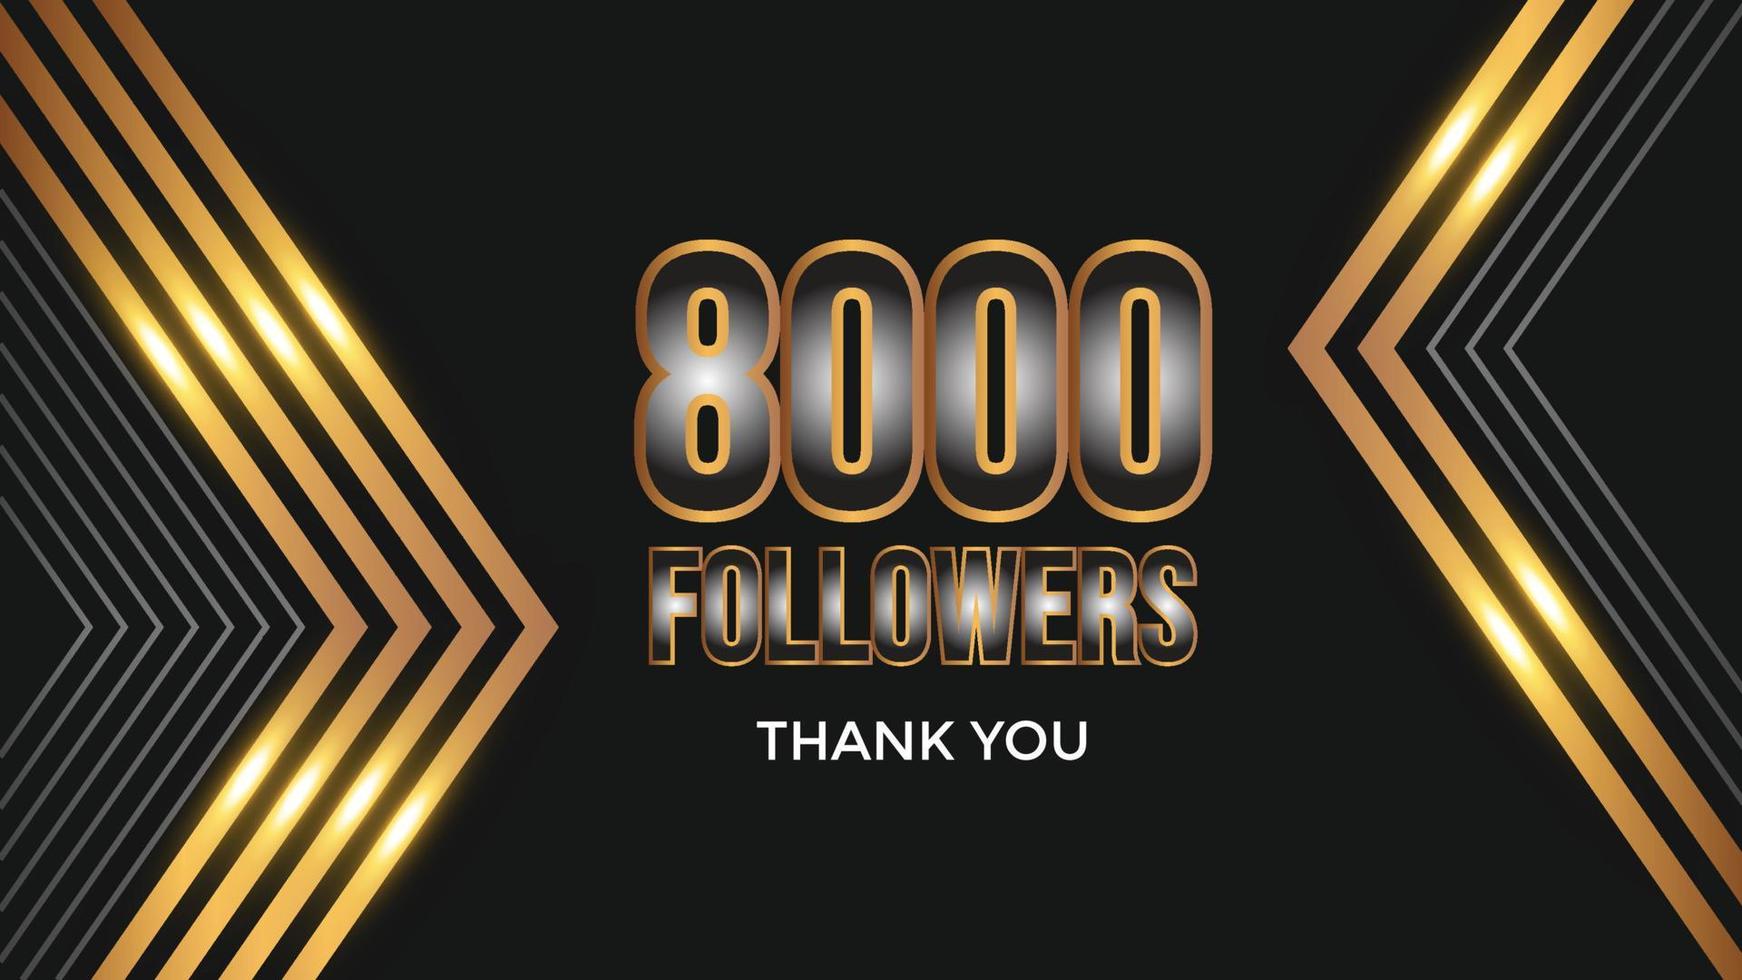 danke design grußkartenvorlage für soziale netzwerke anhänger, abonnenten, wie. 8000 Follower. 8.000 Follower feiern vektor